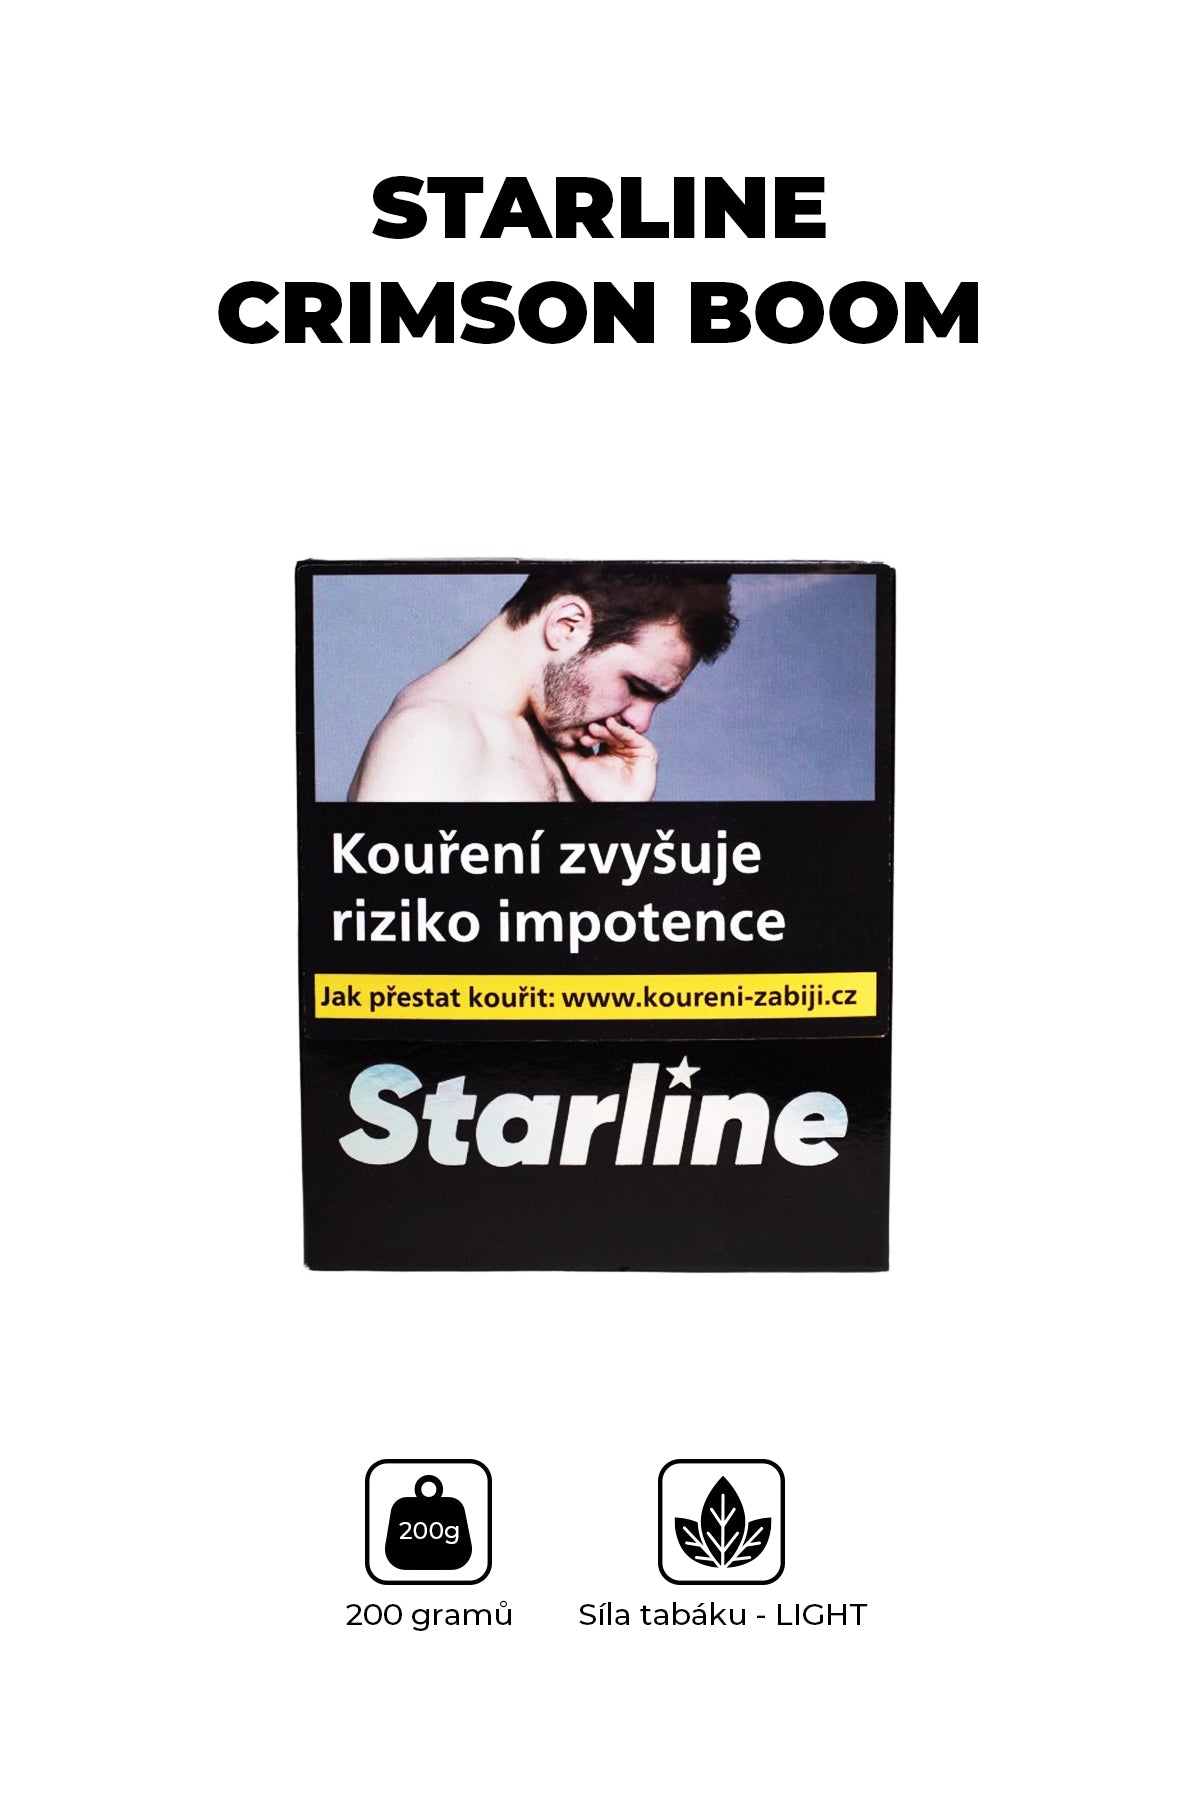 Tabák - Starline 200g - Crimson Boom